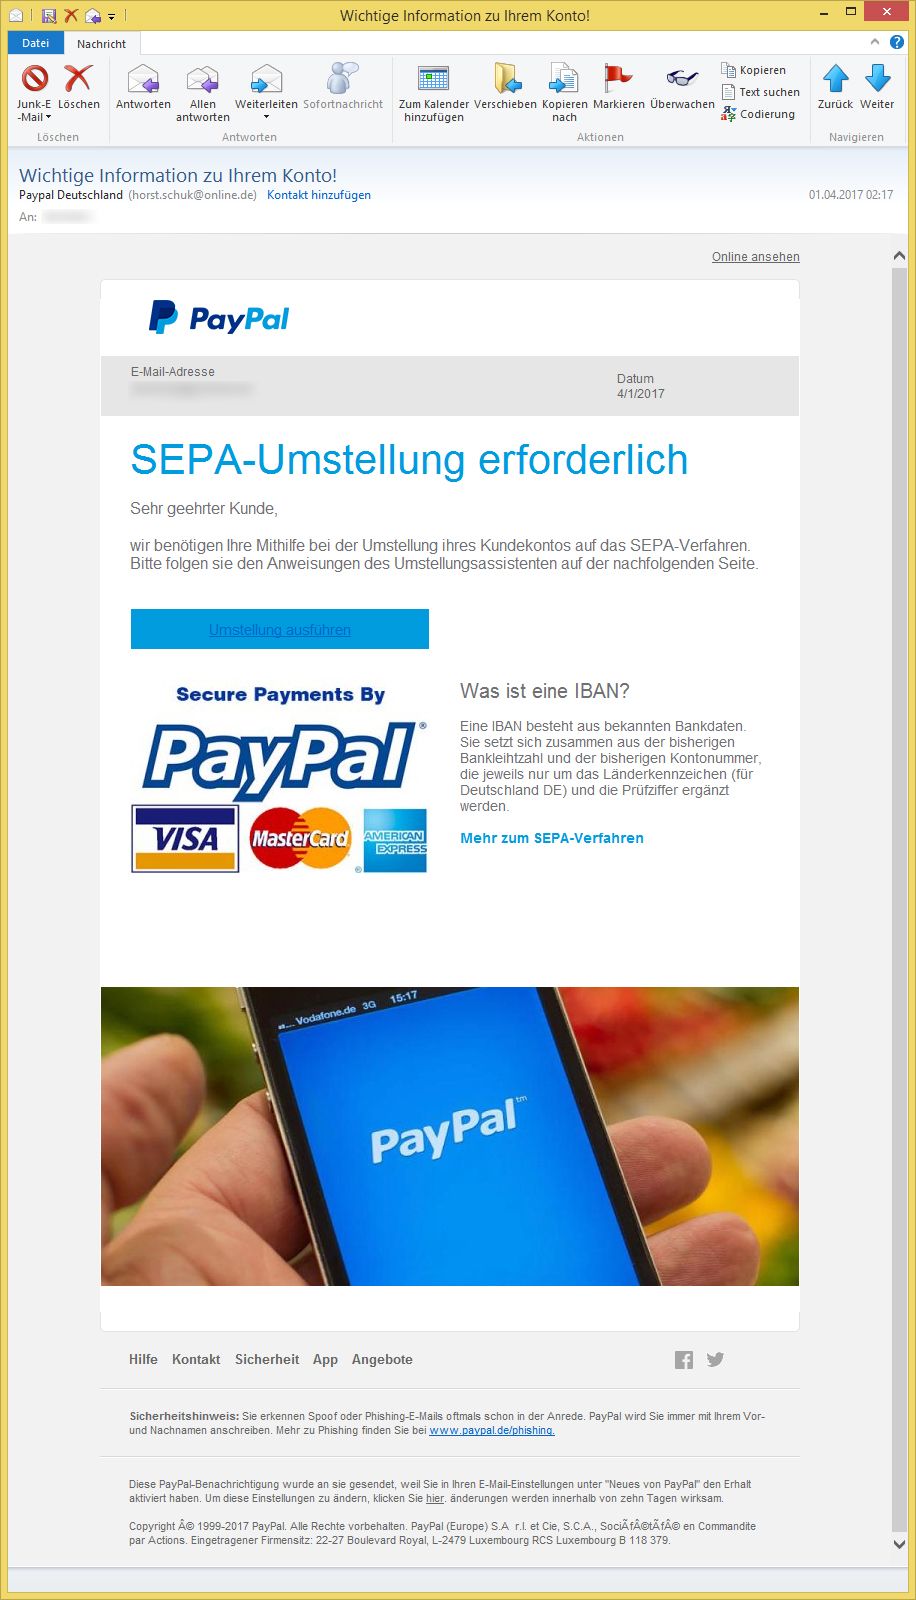 Mail Von Paypal.De